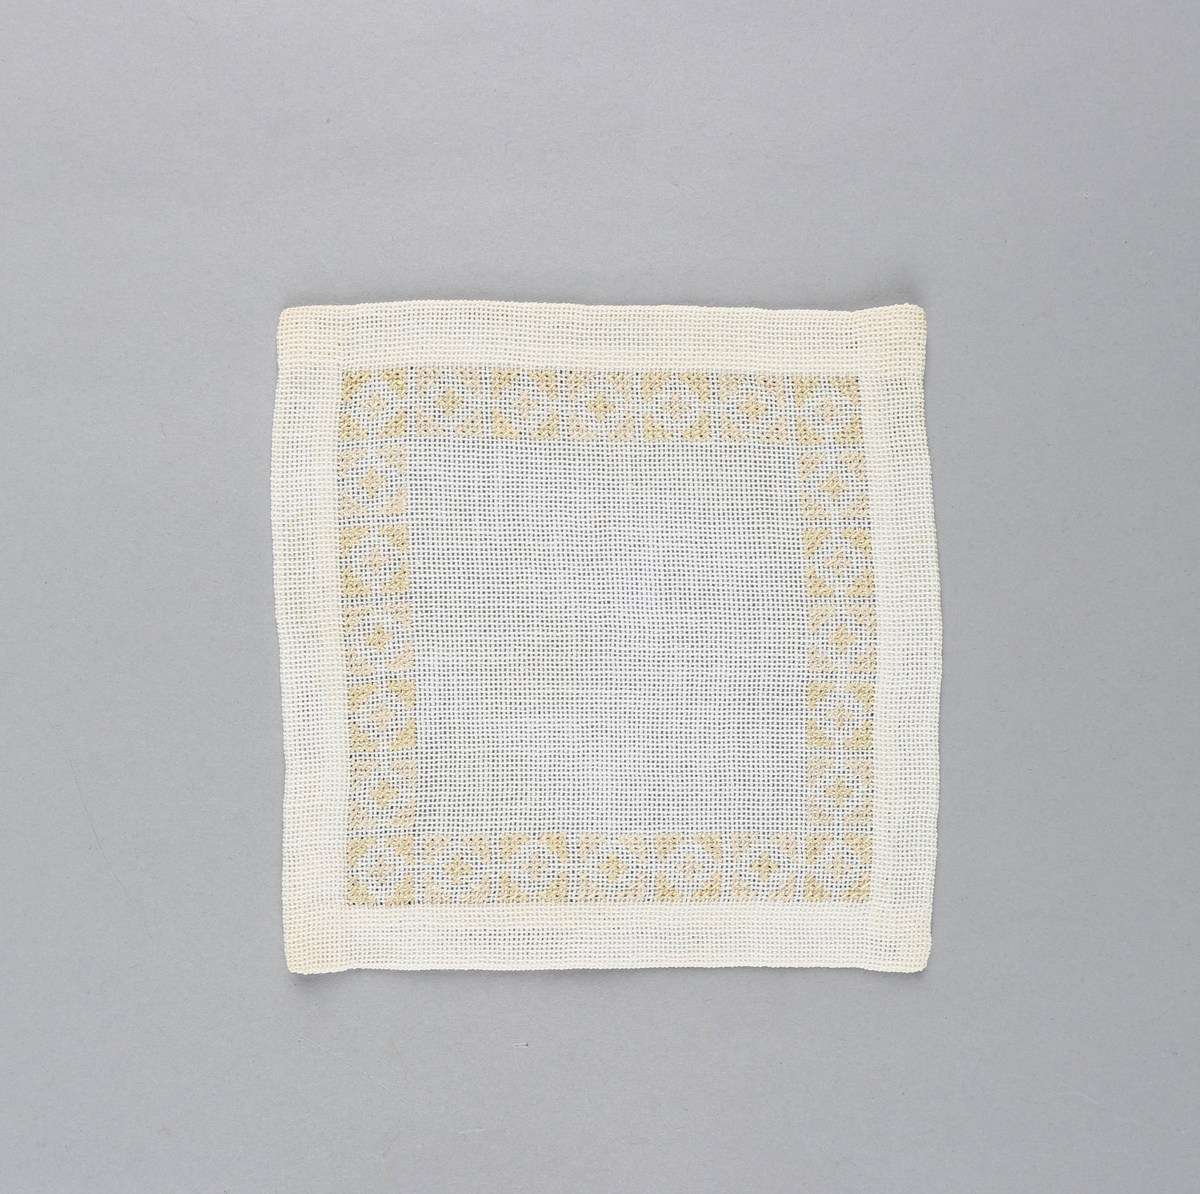 Tilnærmet kvadratisk dekkebrikke i hvitt tekstil med brodert bord langs brettekanten. Broderiet består av korssting av gul og rosa tråd i geometrisk mønster.